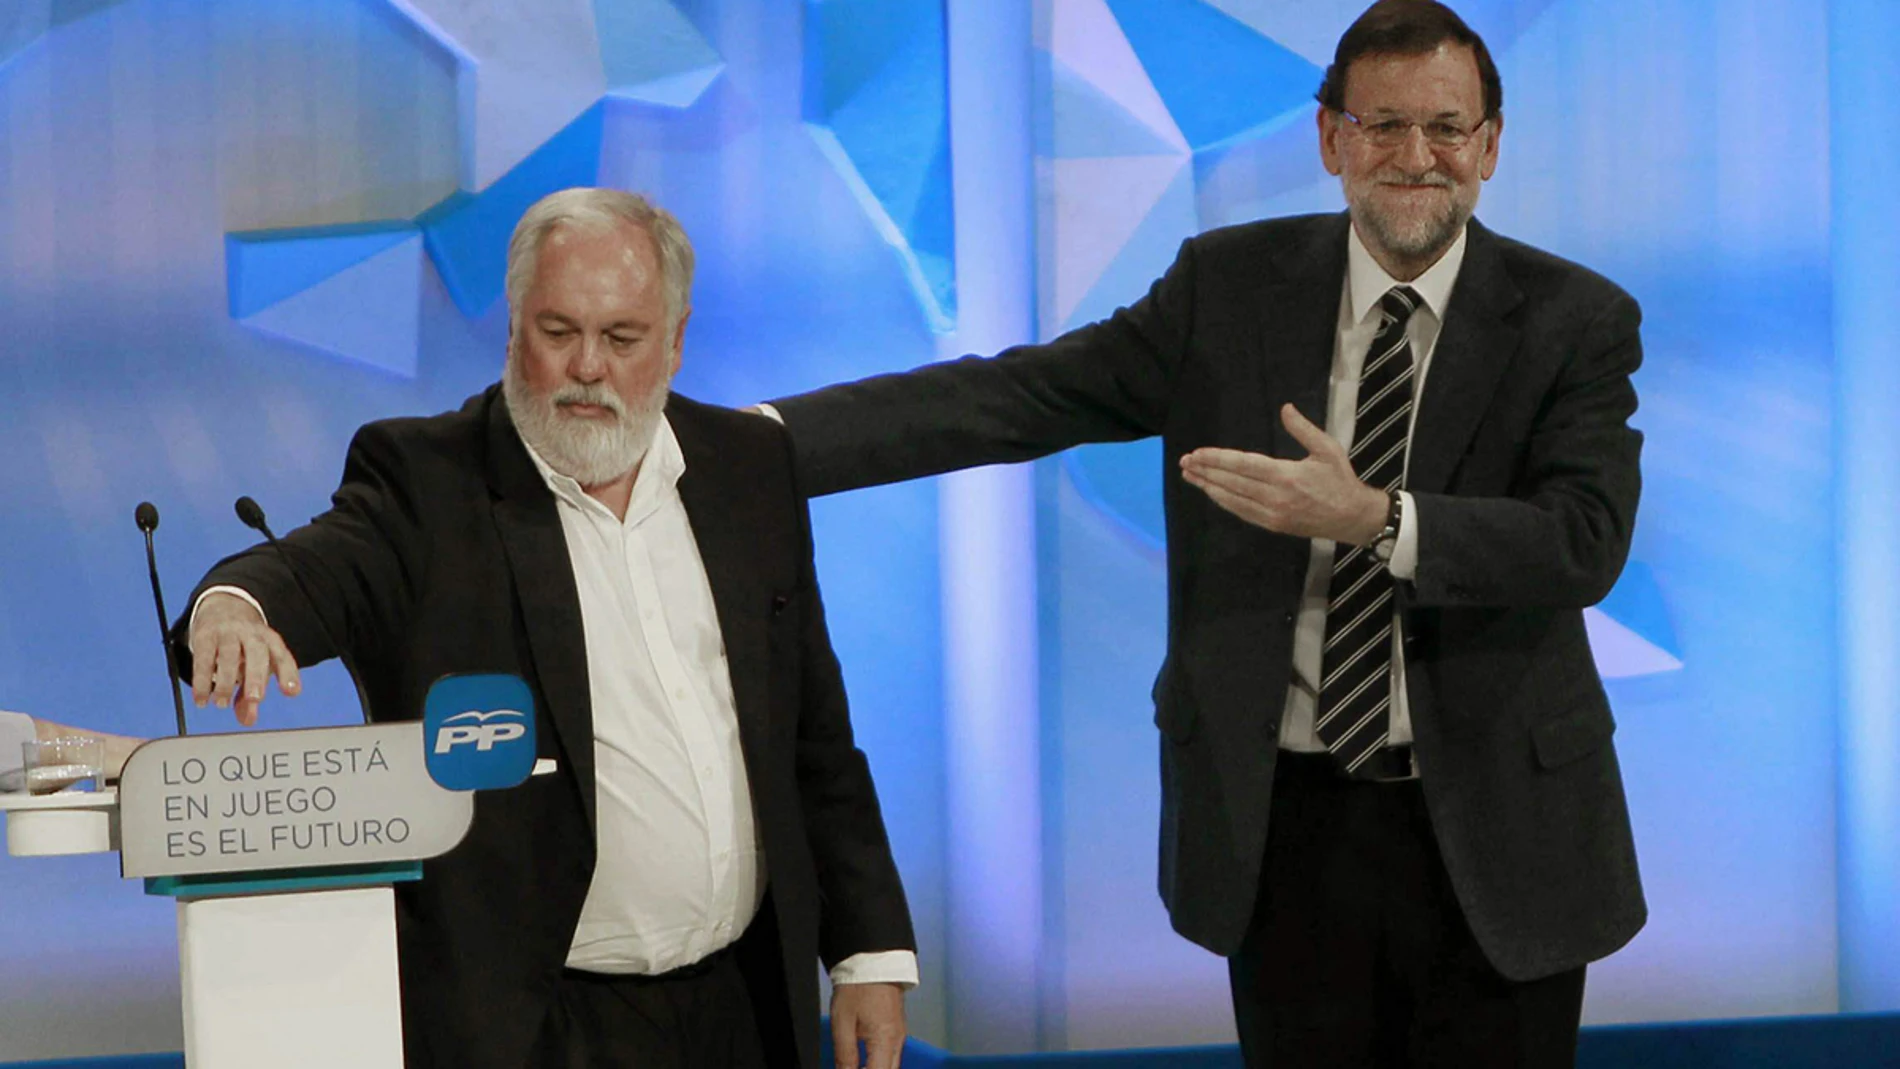 Cañete y Rajoy